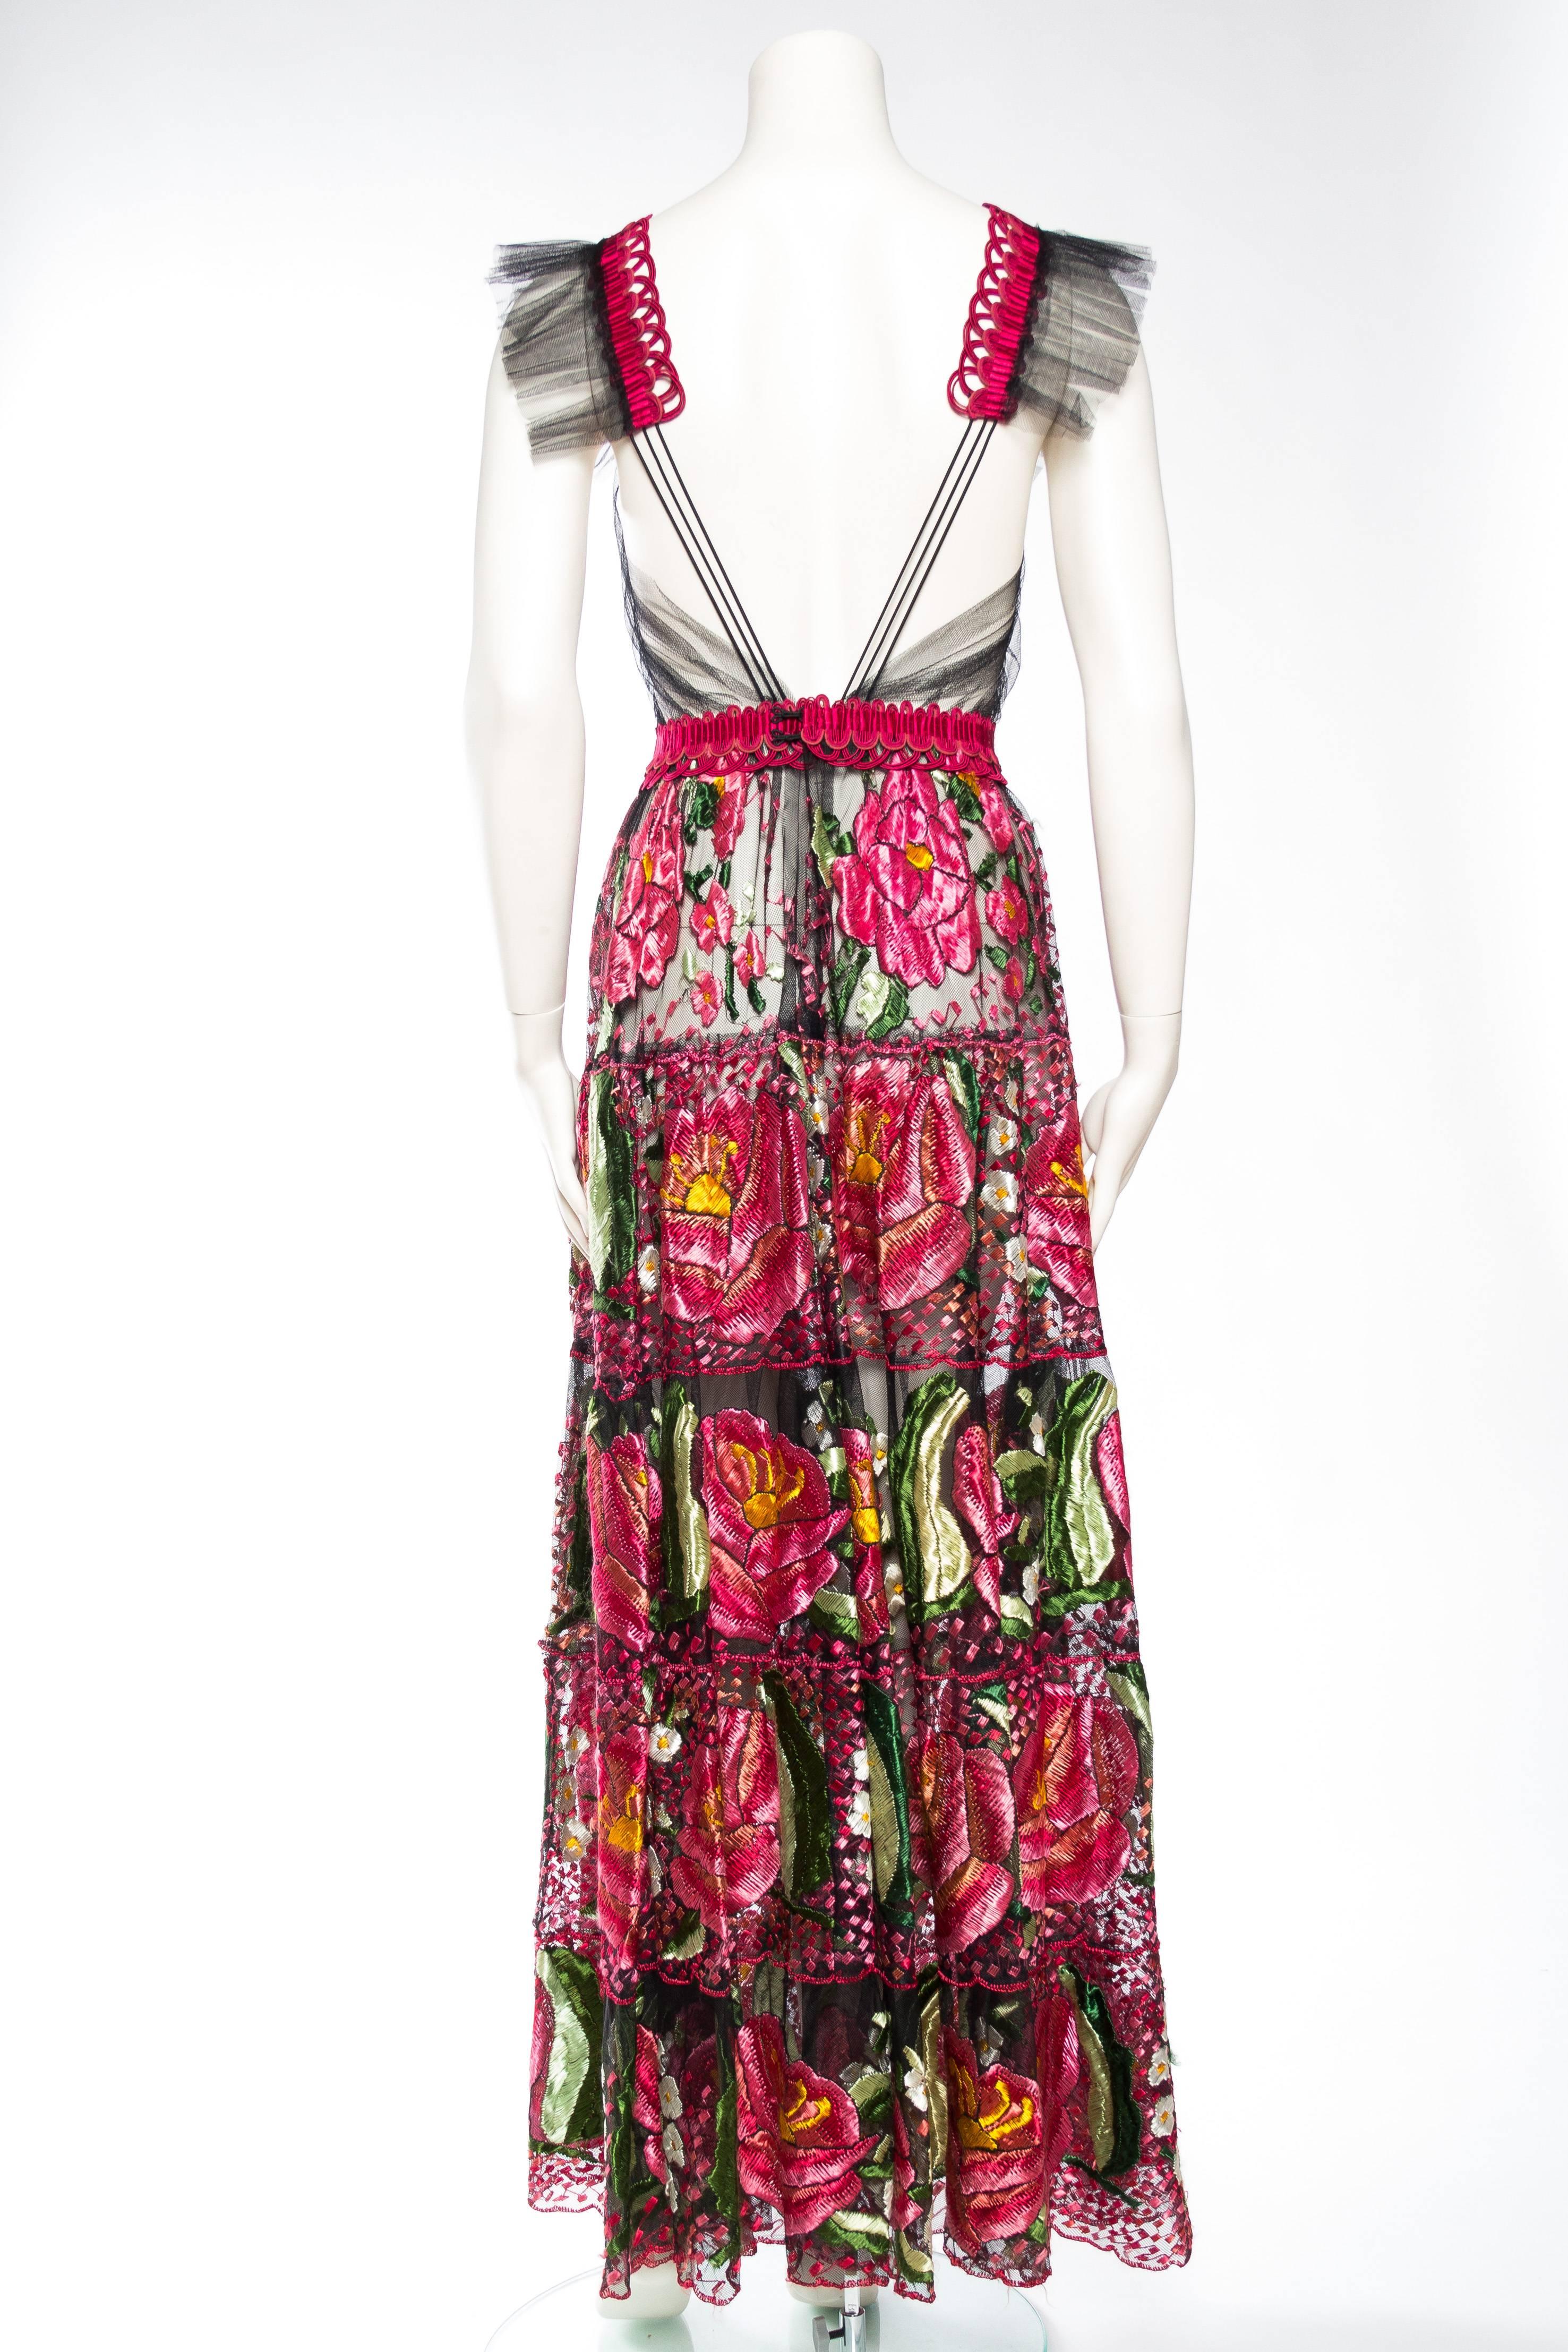 Women's Bohemian Inspired Fully Embroidered Sheer Net Dress